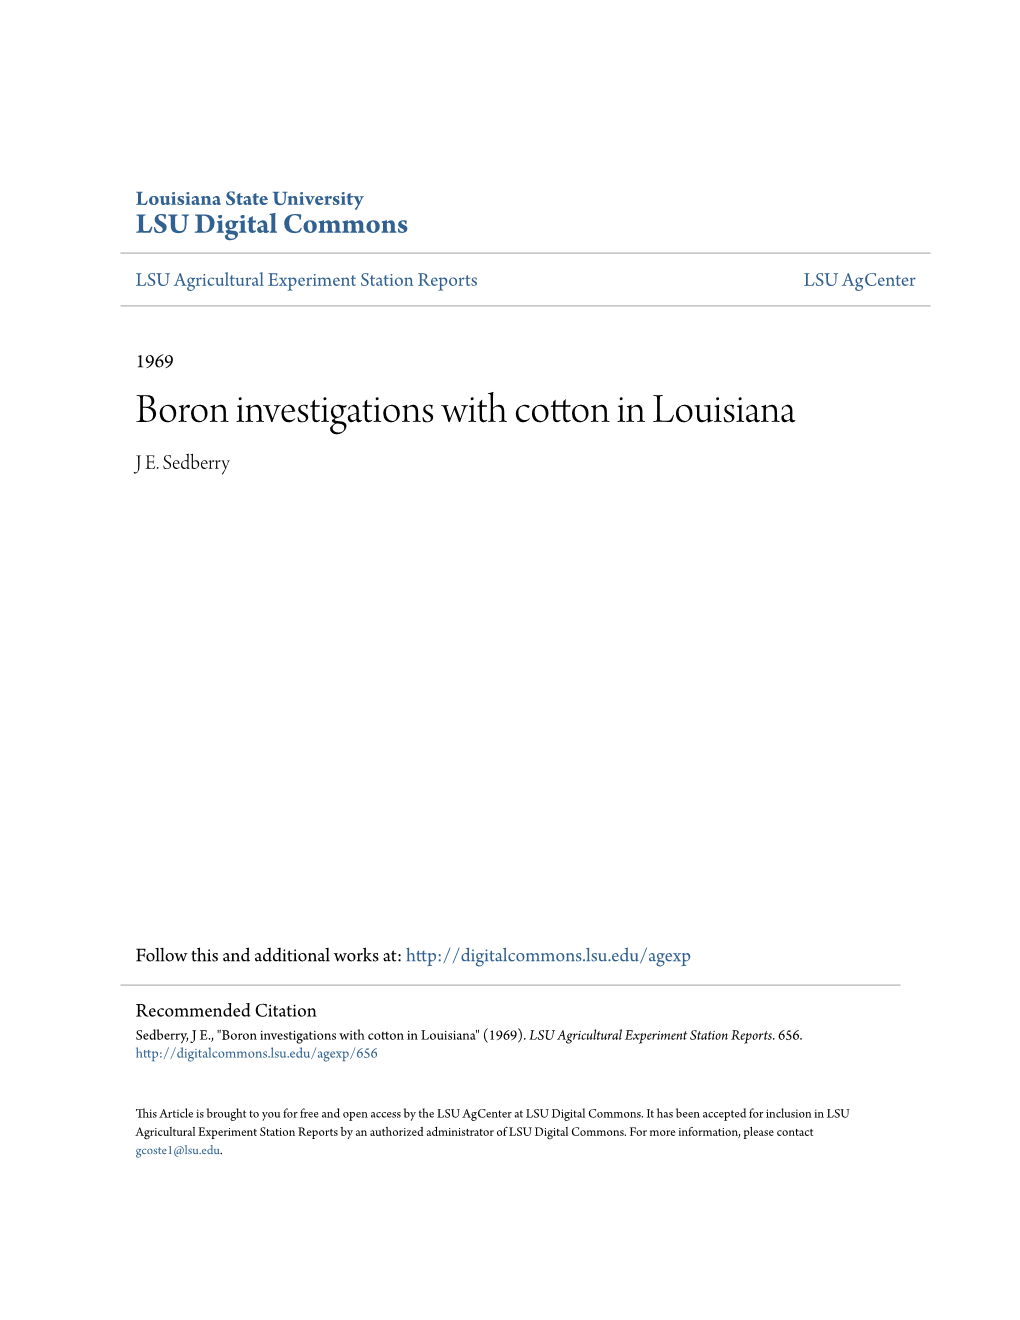 Boron Investigations with Cotton in Louisiana J E